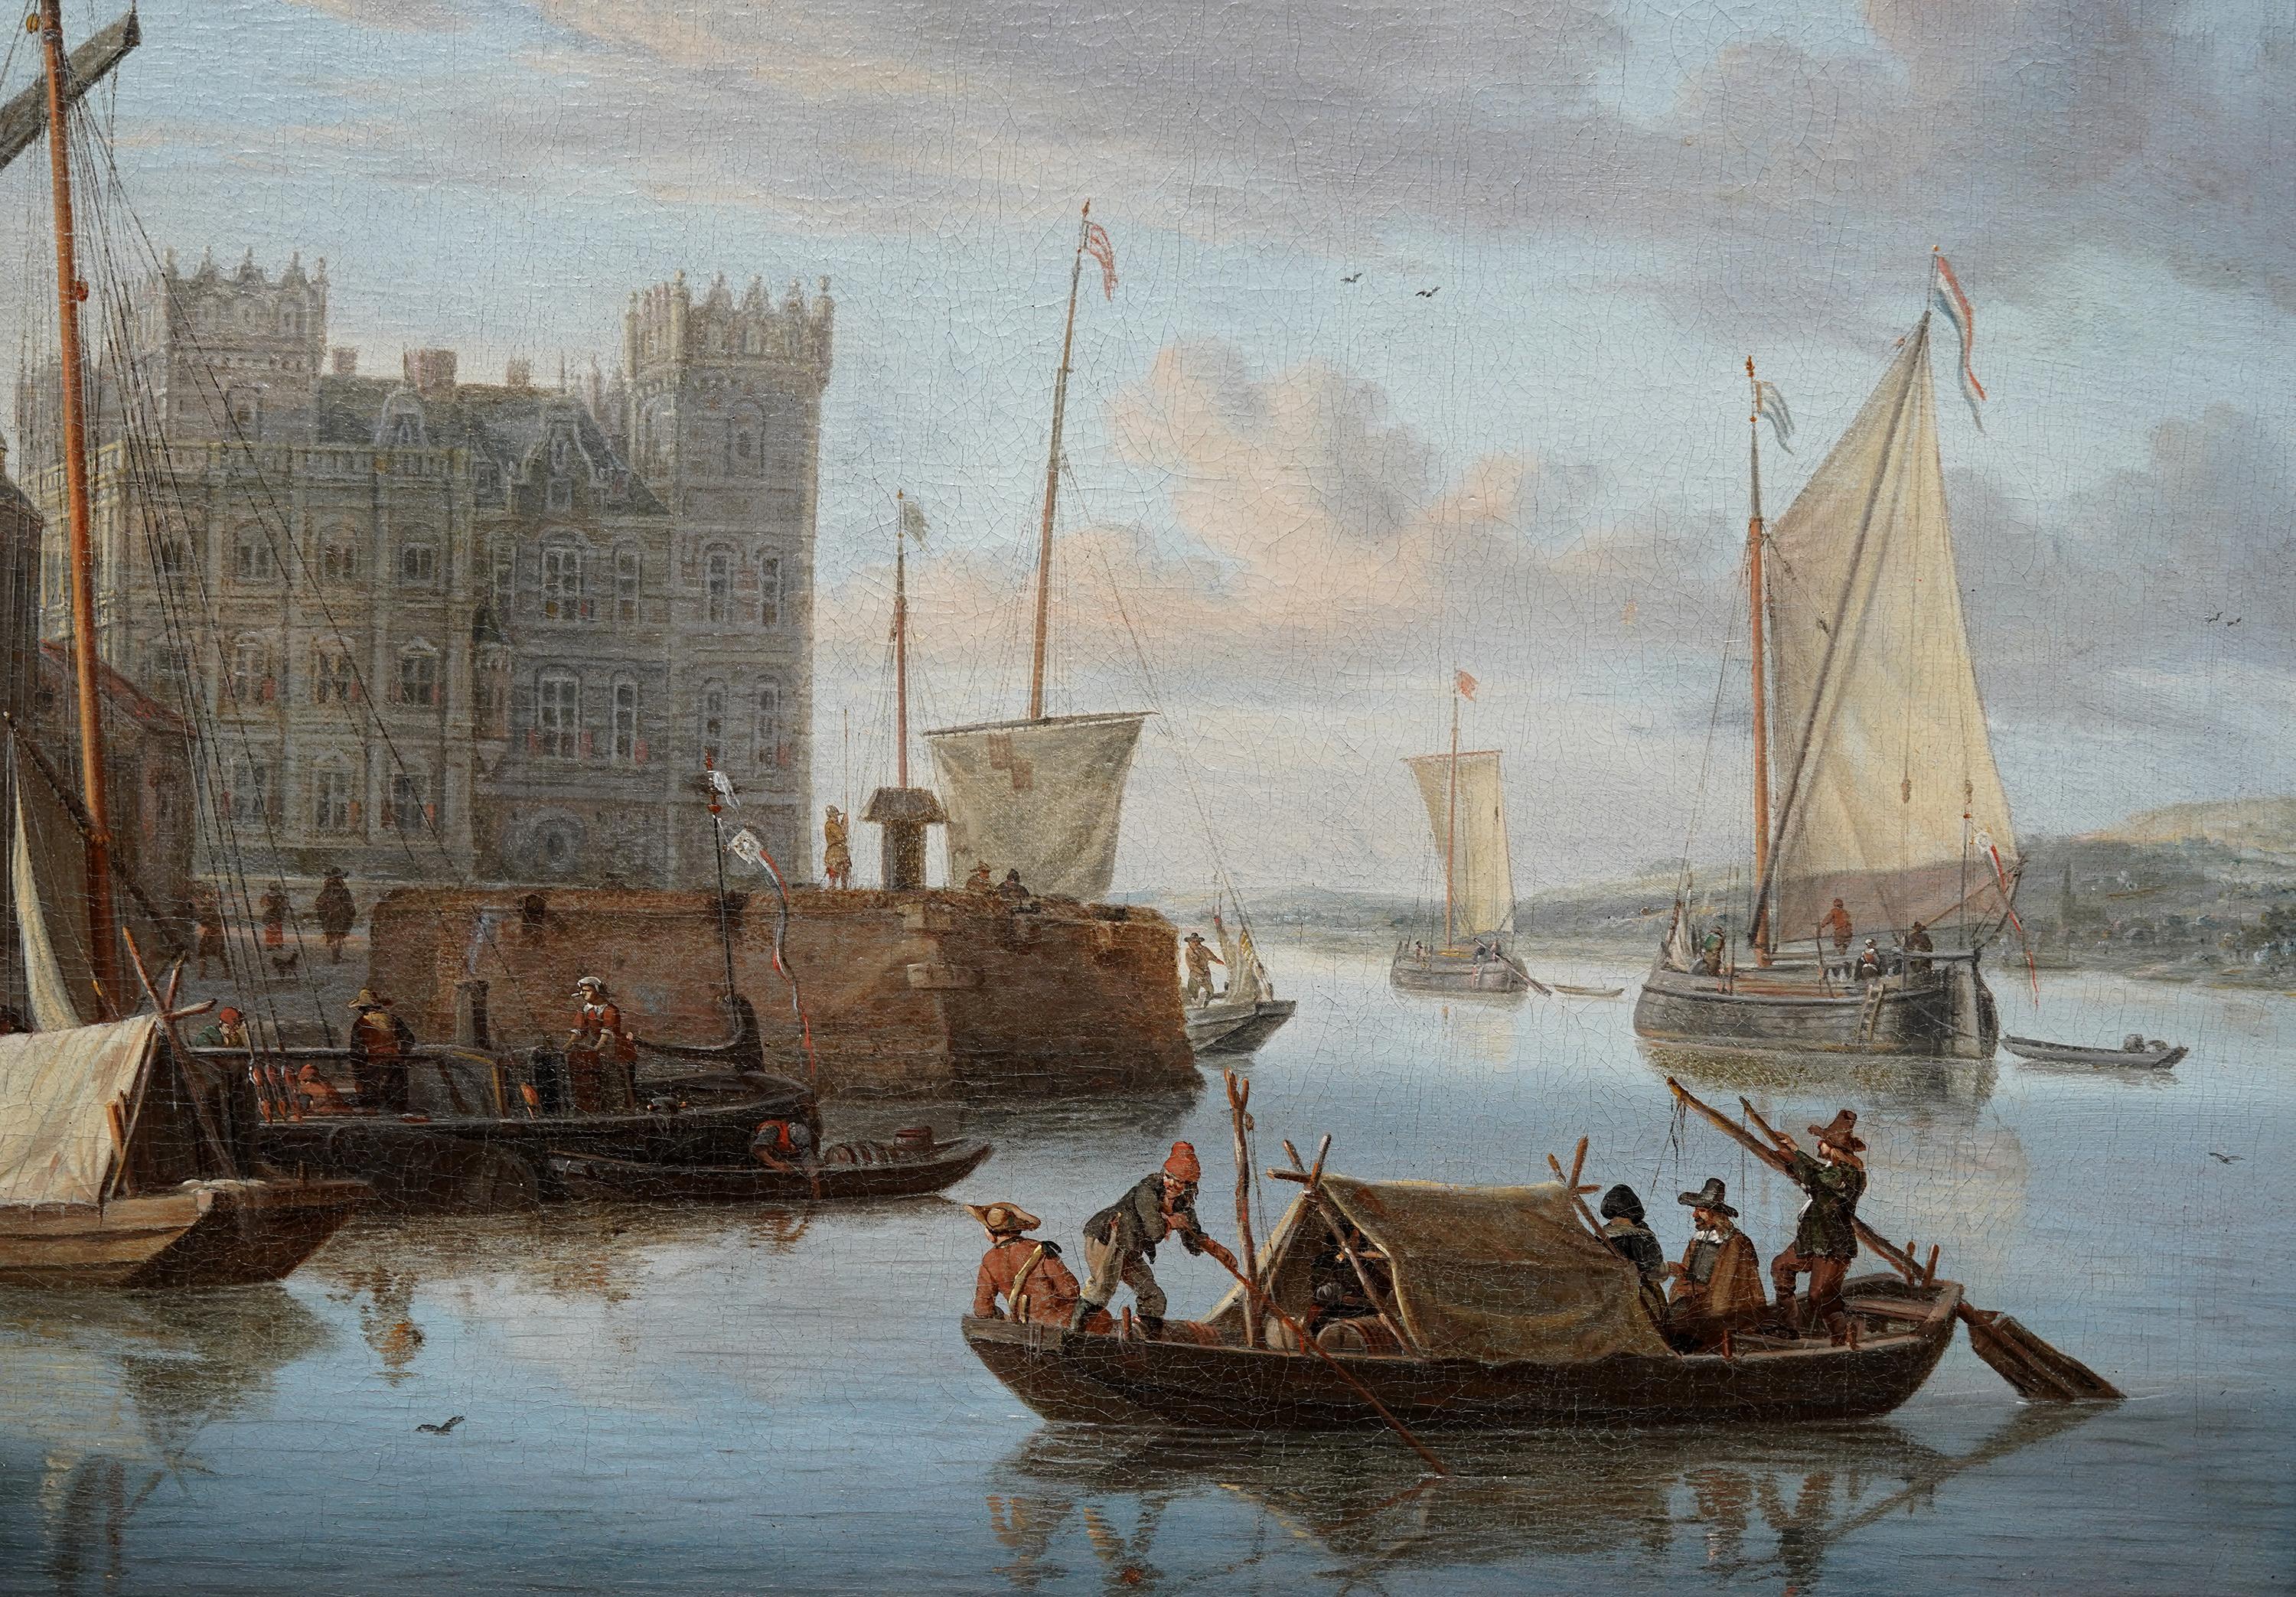 Cette superbe peinture à l'huile hollandaise du 17e siècle de l'Âge d'or, représentant un paysage urbain d'Amsterdam, est l'œuvre de l'artiste Jacobus Storck. Peinte vers 1670, la composition est une scène portuaire hollandaise d'Amsterdam avec des